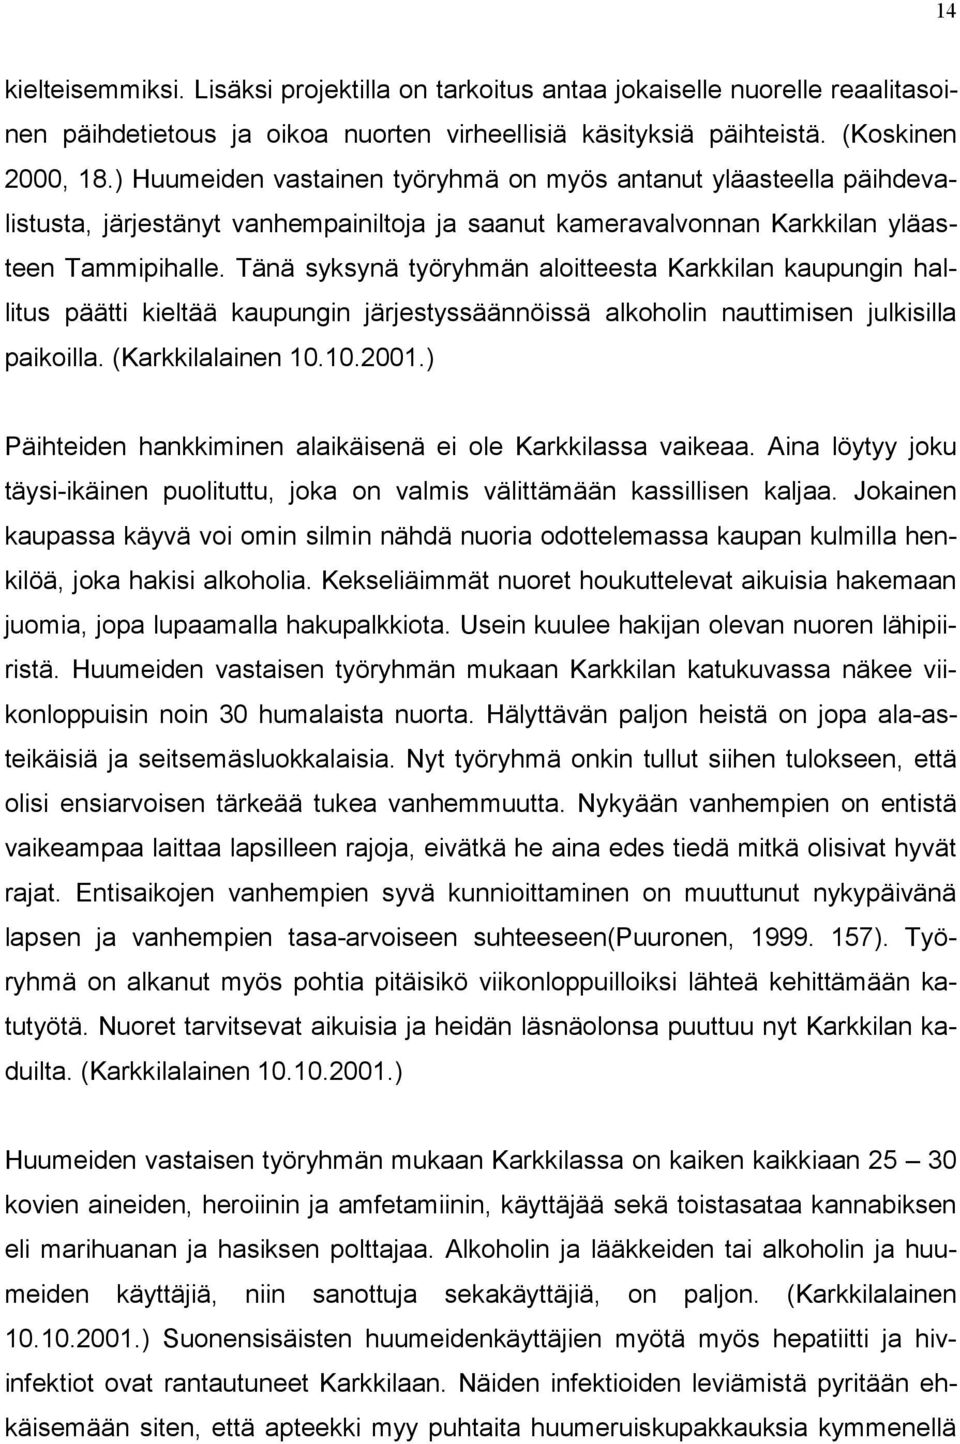 Tänä syksynä työryhmän aloitteesta Karkkilan kaupungin hallitus päätti kieltää kaupungin järjestyssäännöissä alkoholin nauttimisen julkisilla paikoilla. (Karkkilalainen 10.10.2001.